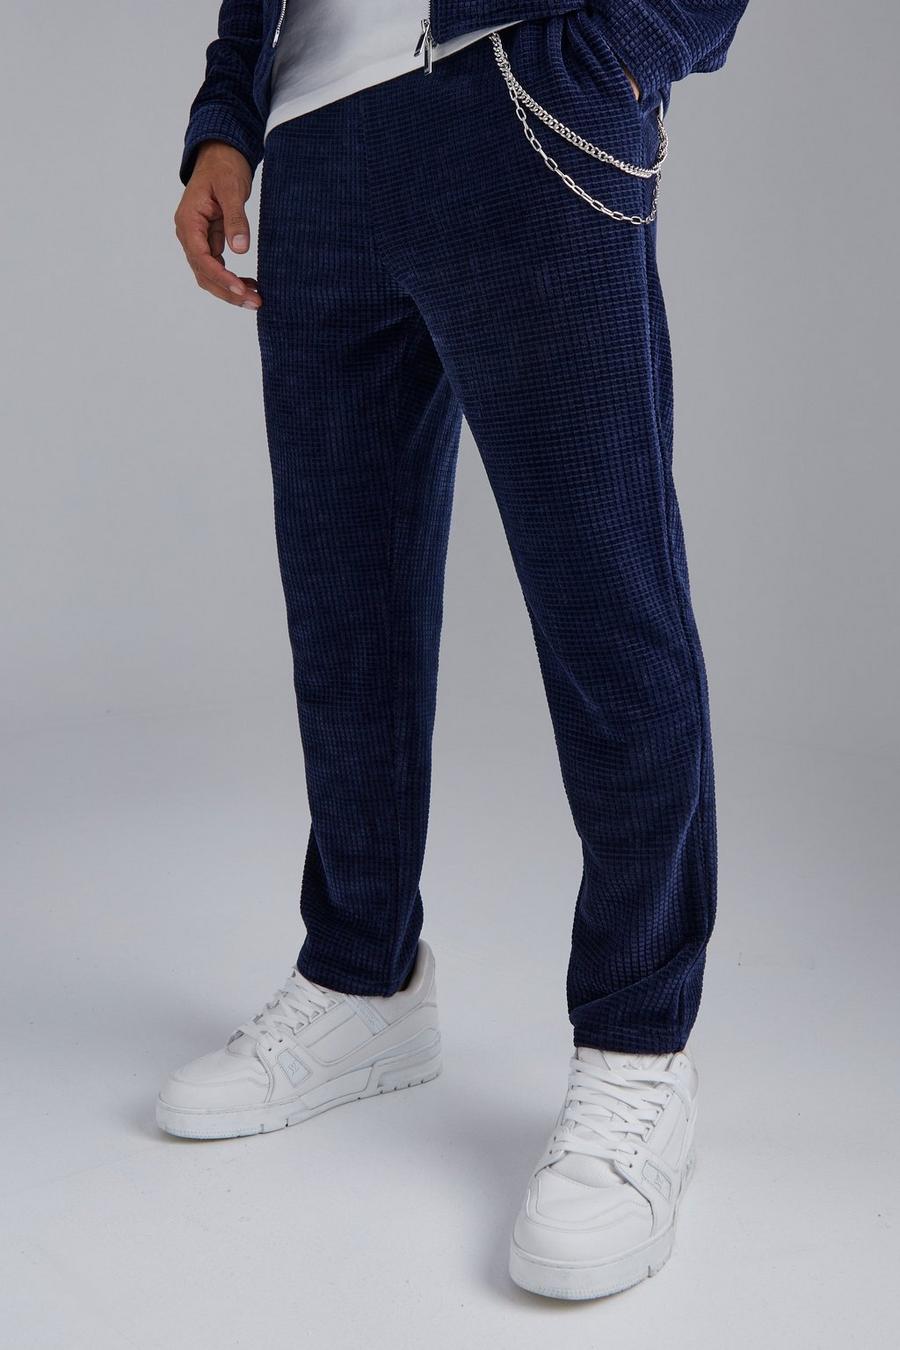 Pantalón deportivo texturizado elegante con cadena, Dark blue image number 1